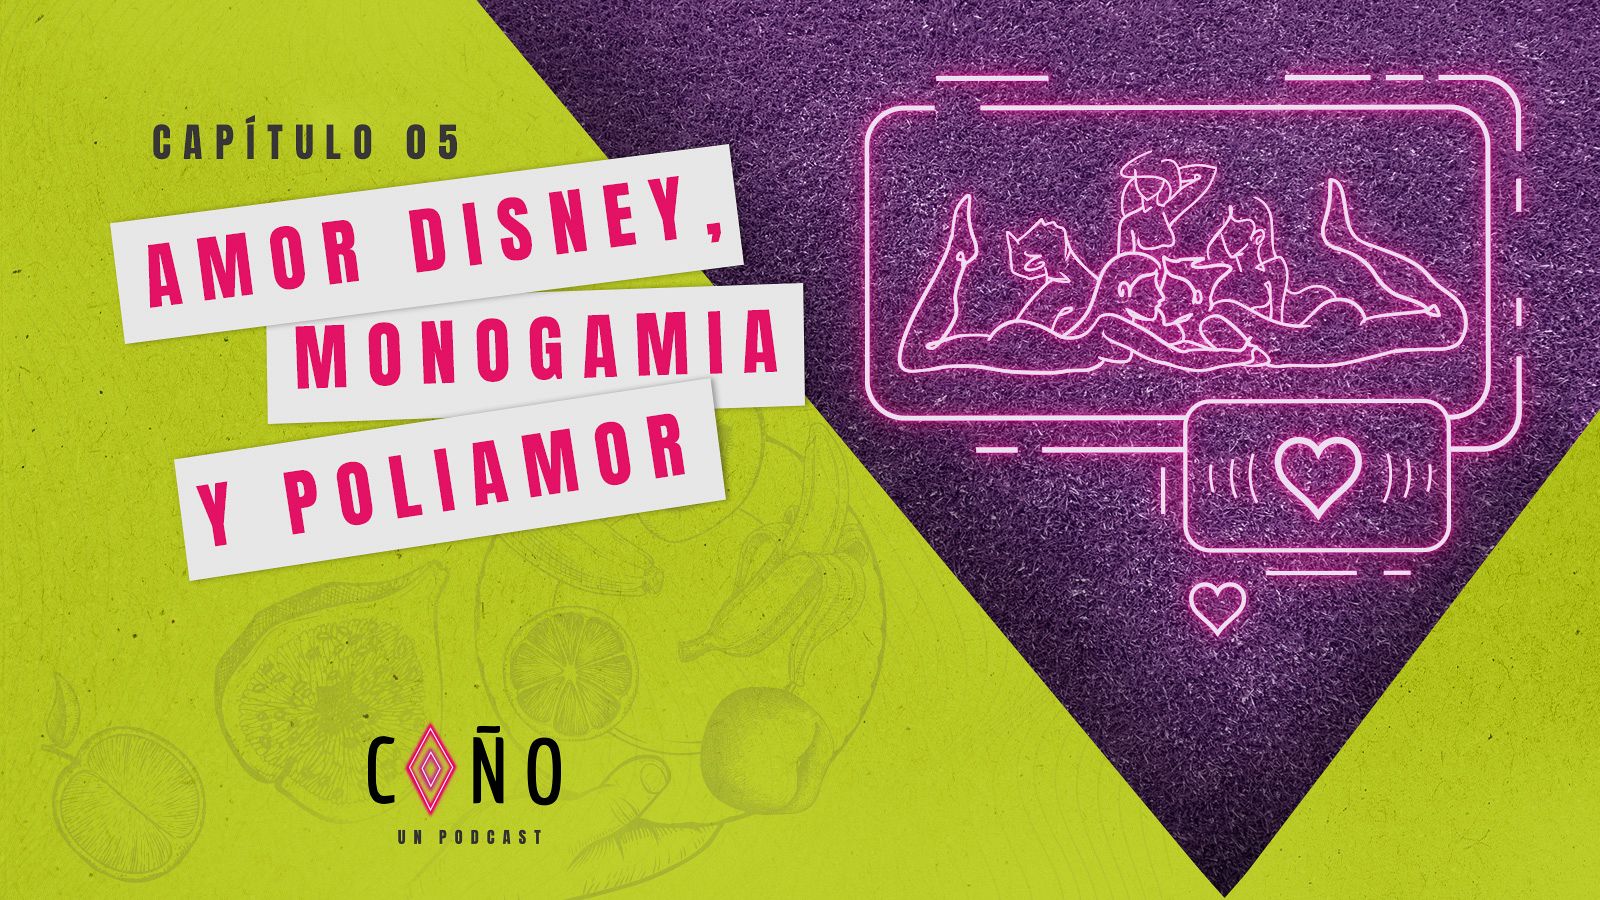 A Coa O Un Podcast Capatulo 5 Amor Disney Monogamia Y Poliamor